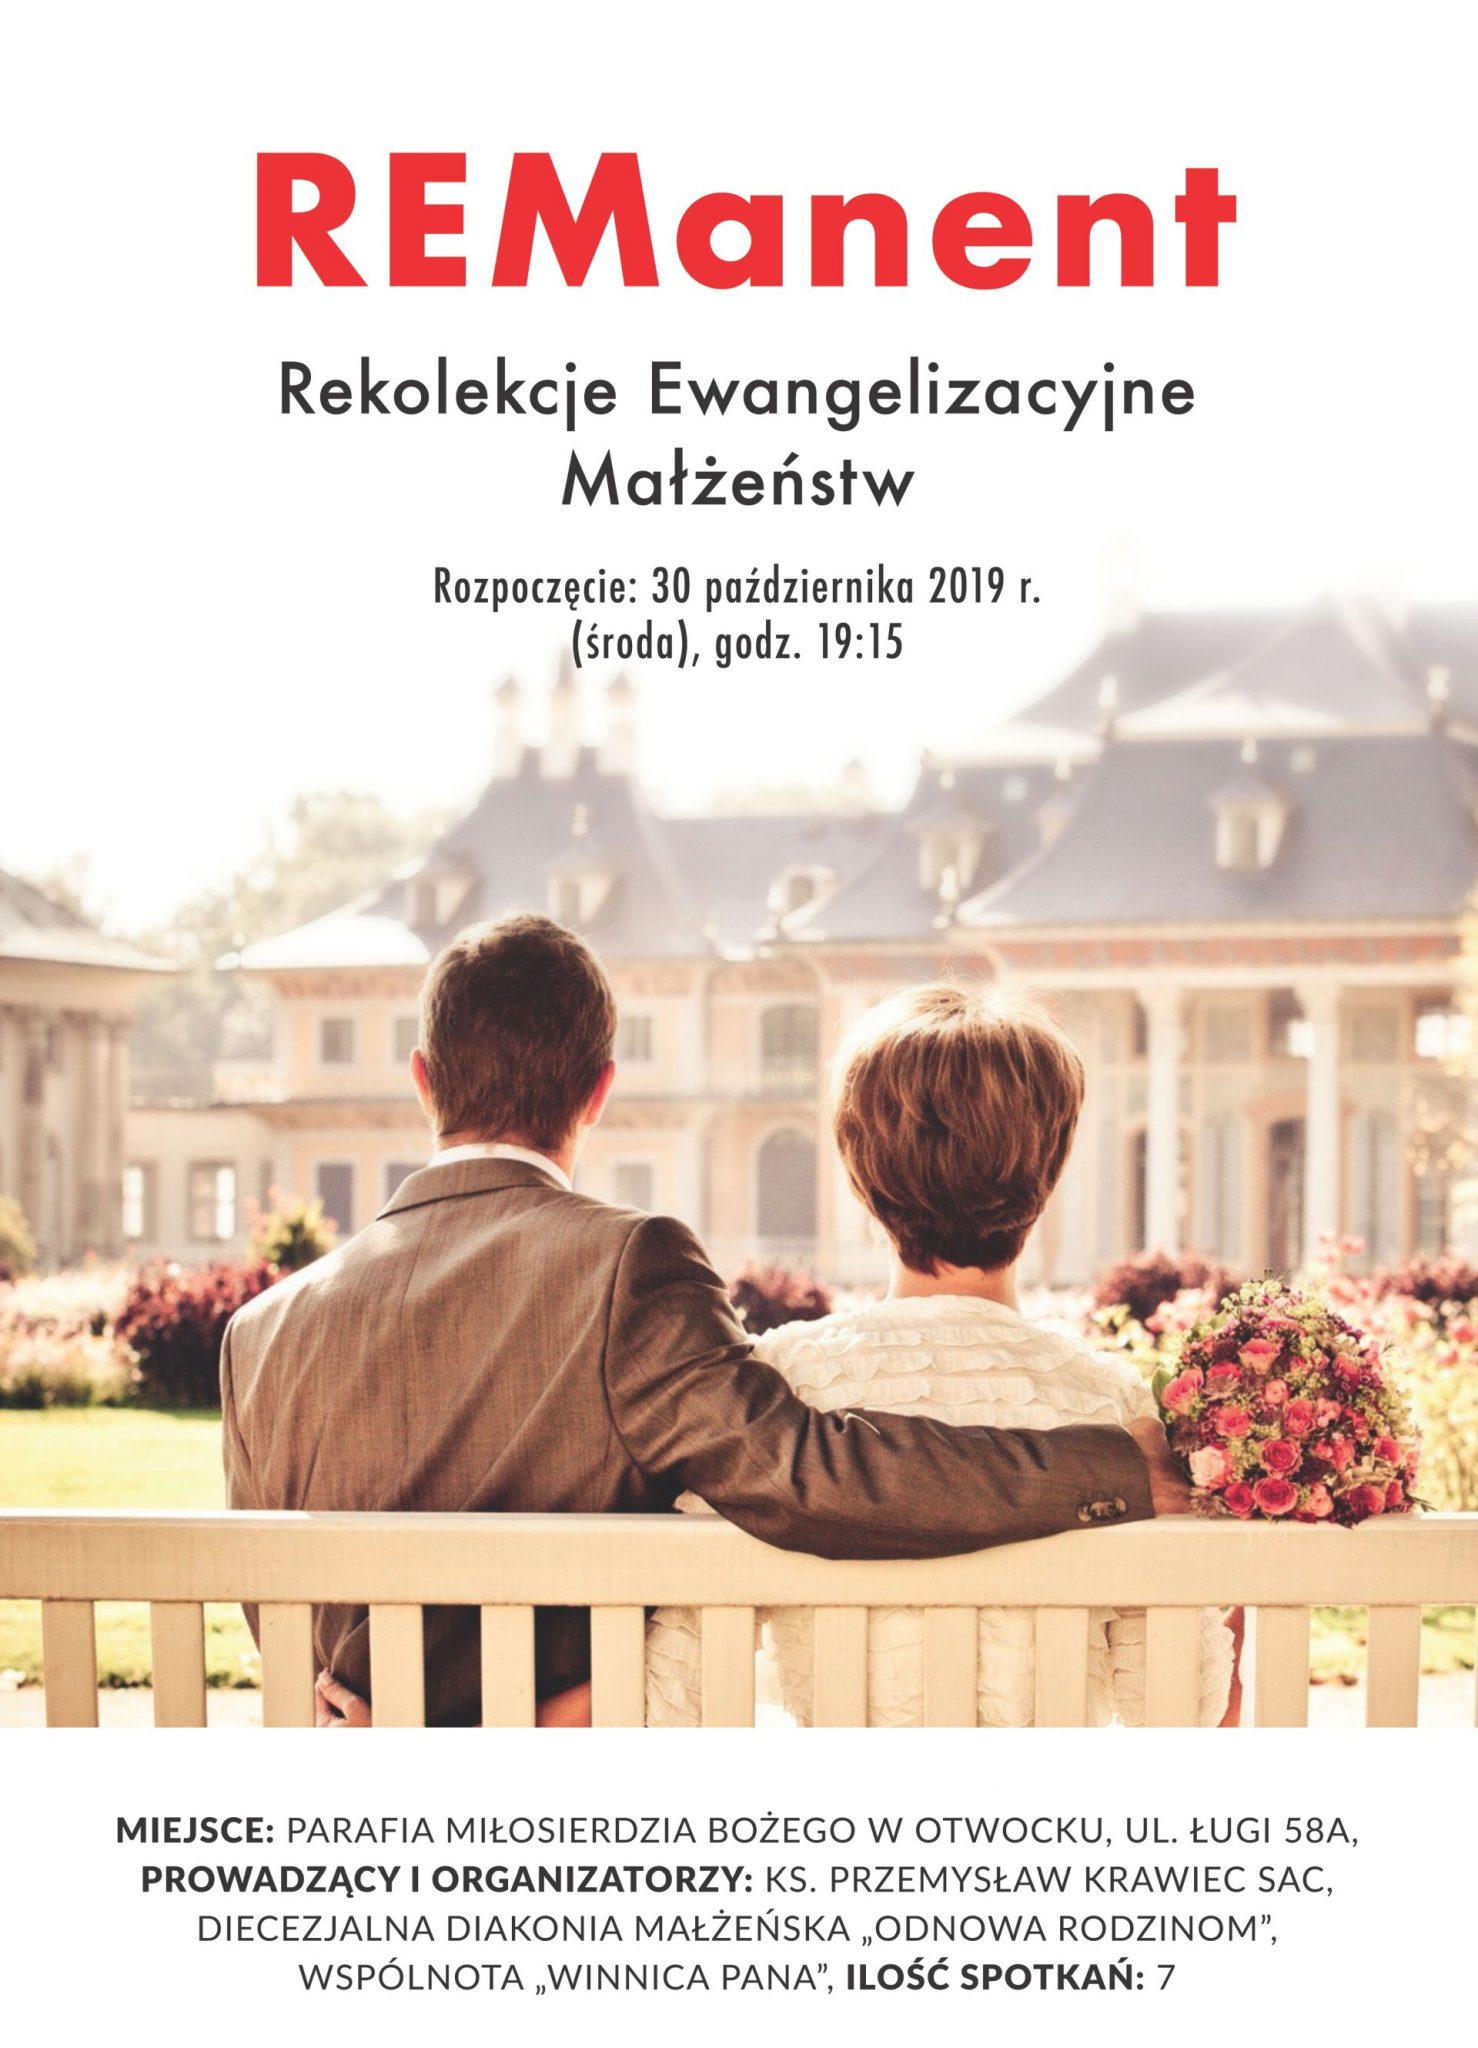 REManent – Rekolekcje Ewangelizacyjne Małżeństw